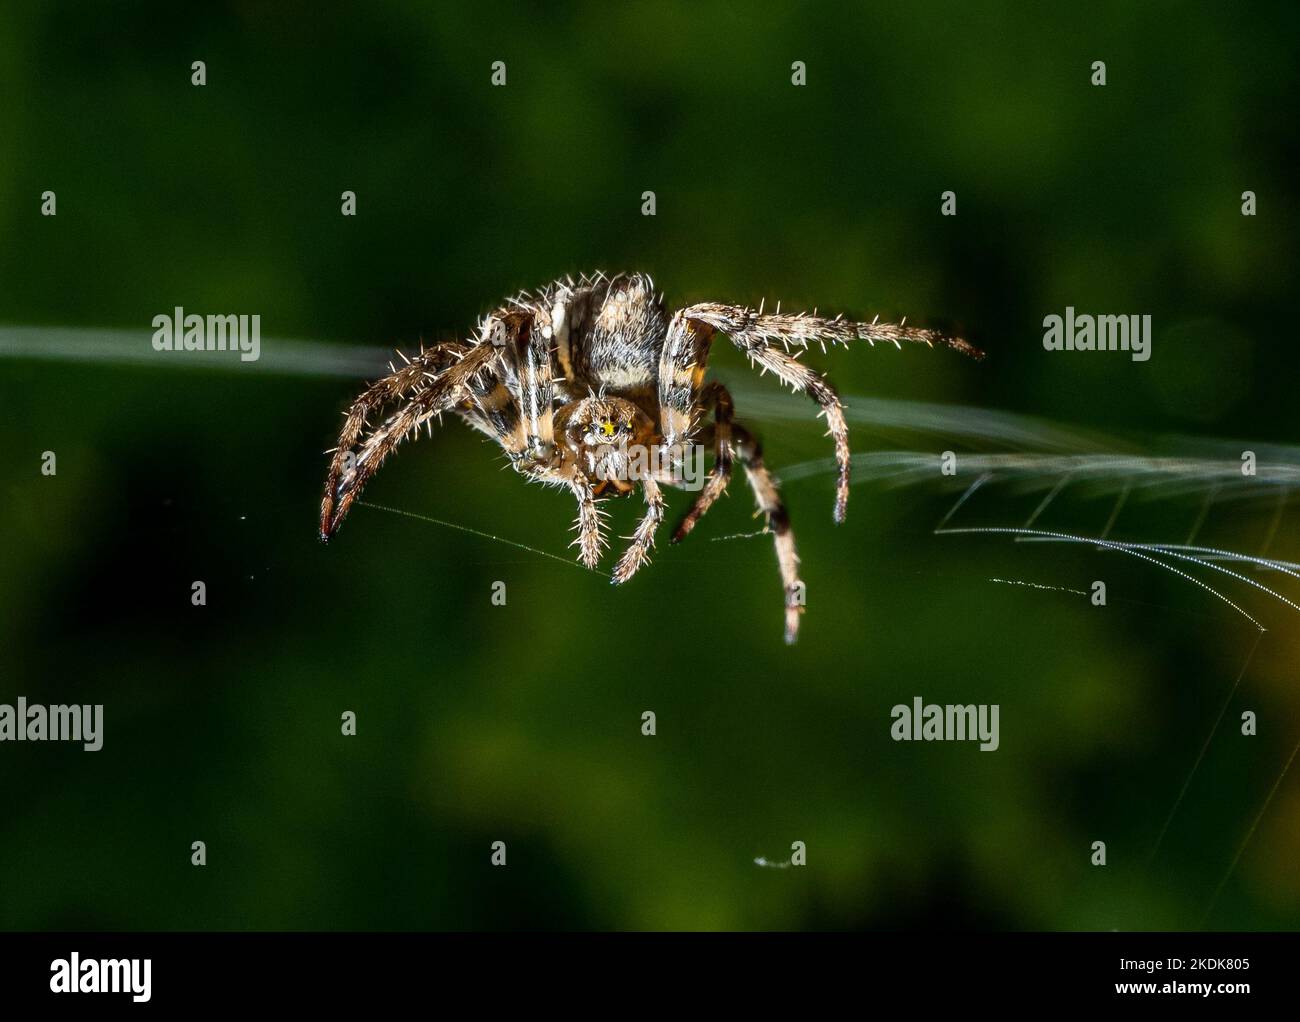 Una araña del orbe de la Cruz del Jardín en un jardín, Hanbury, Burton-on-Trent, Staffordshire Foto de stock